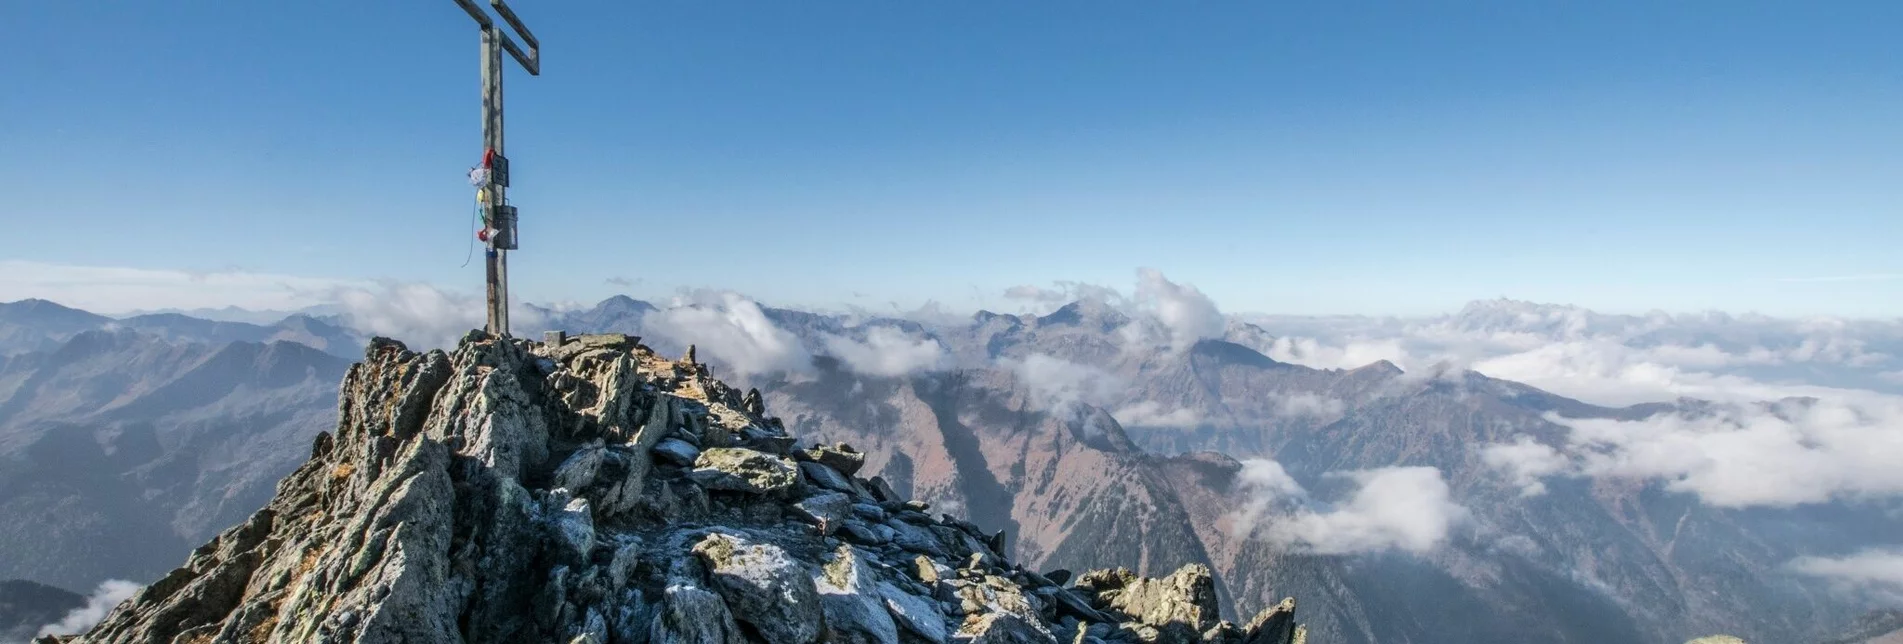 Mountain Hike Summit Tour to the Knallstein - Touren-Impression #1 | © TVB Schladming-Dachstein